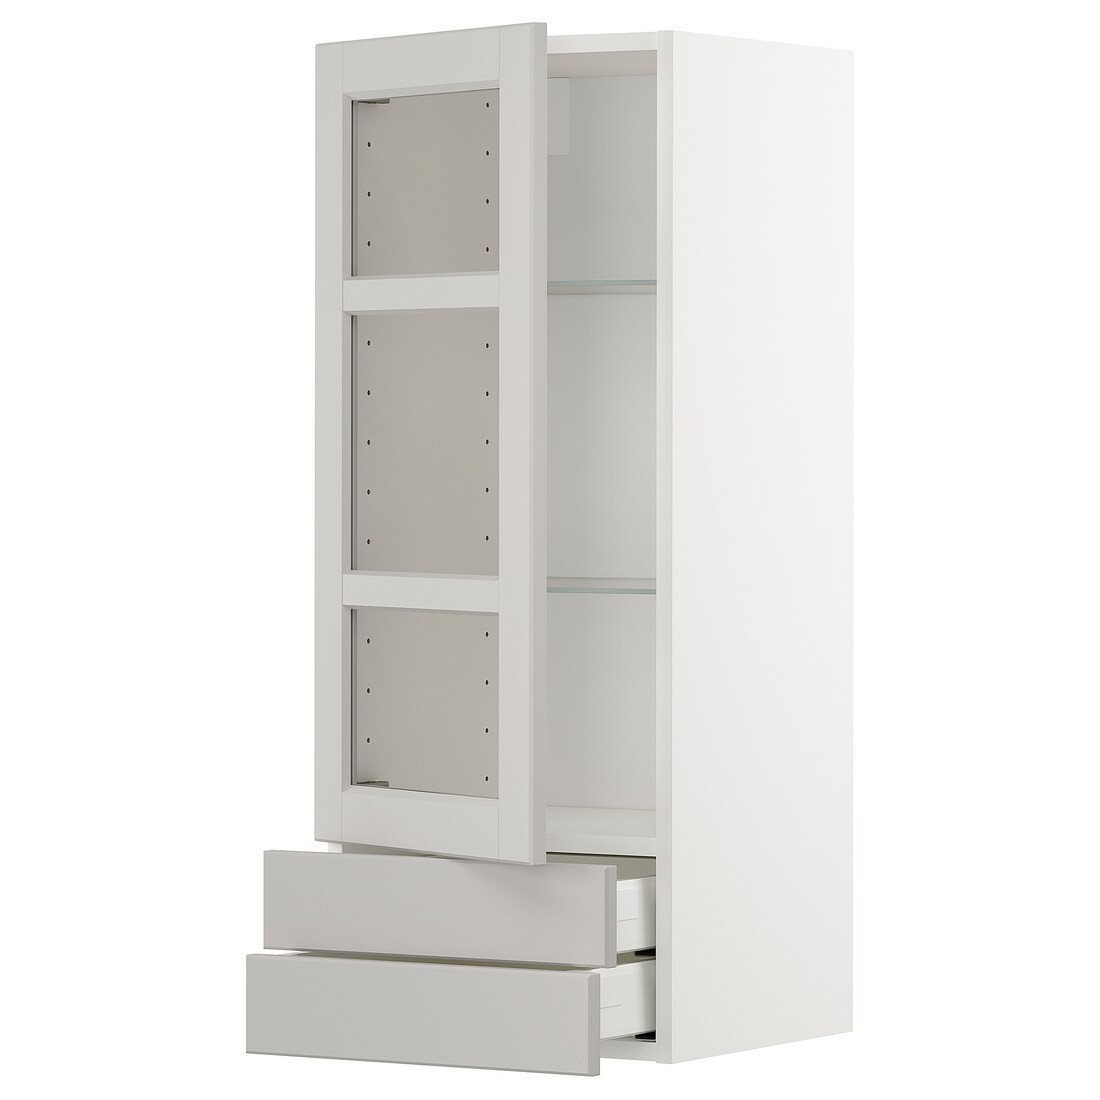 METOD МЕТОД / MAXIMERA МАКСИМЕРА Навесной шкаф / 1 стеклянная дверь / 2 ящика, белый / Lerhyttan светло-серый, 40x100 см